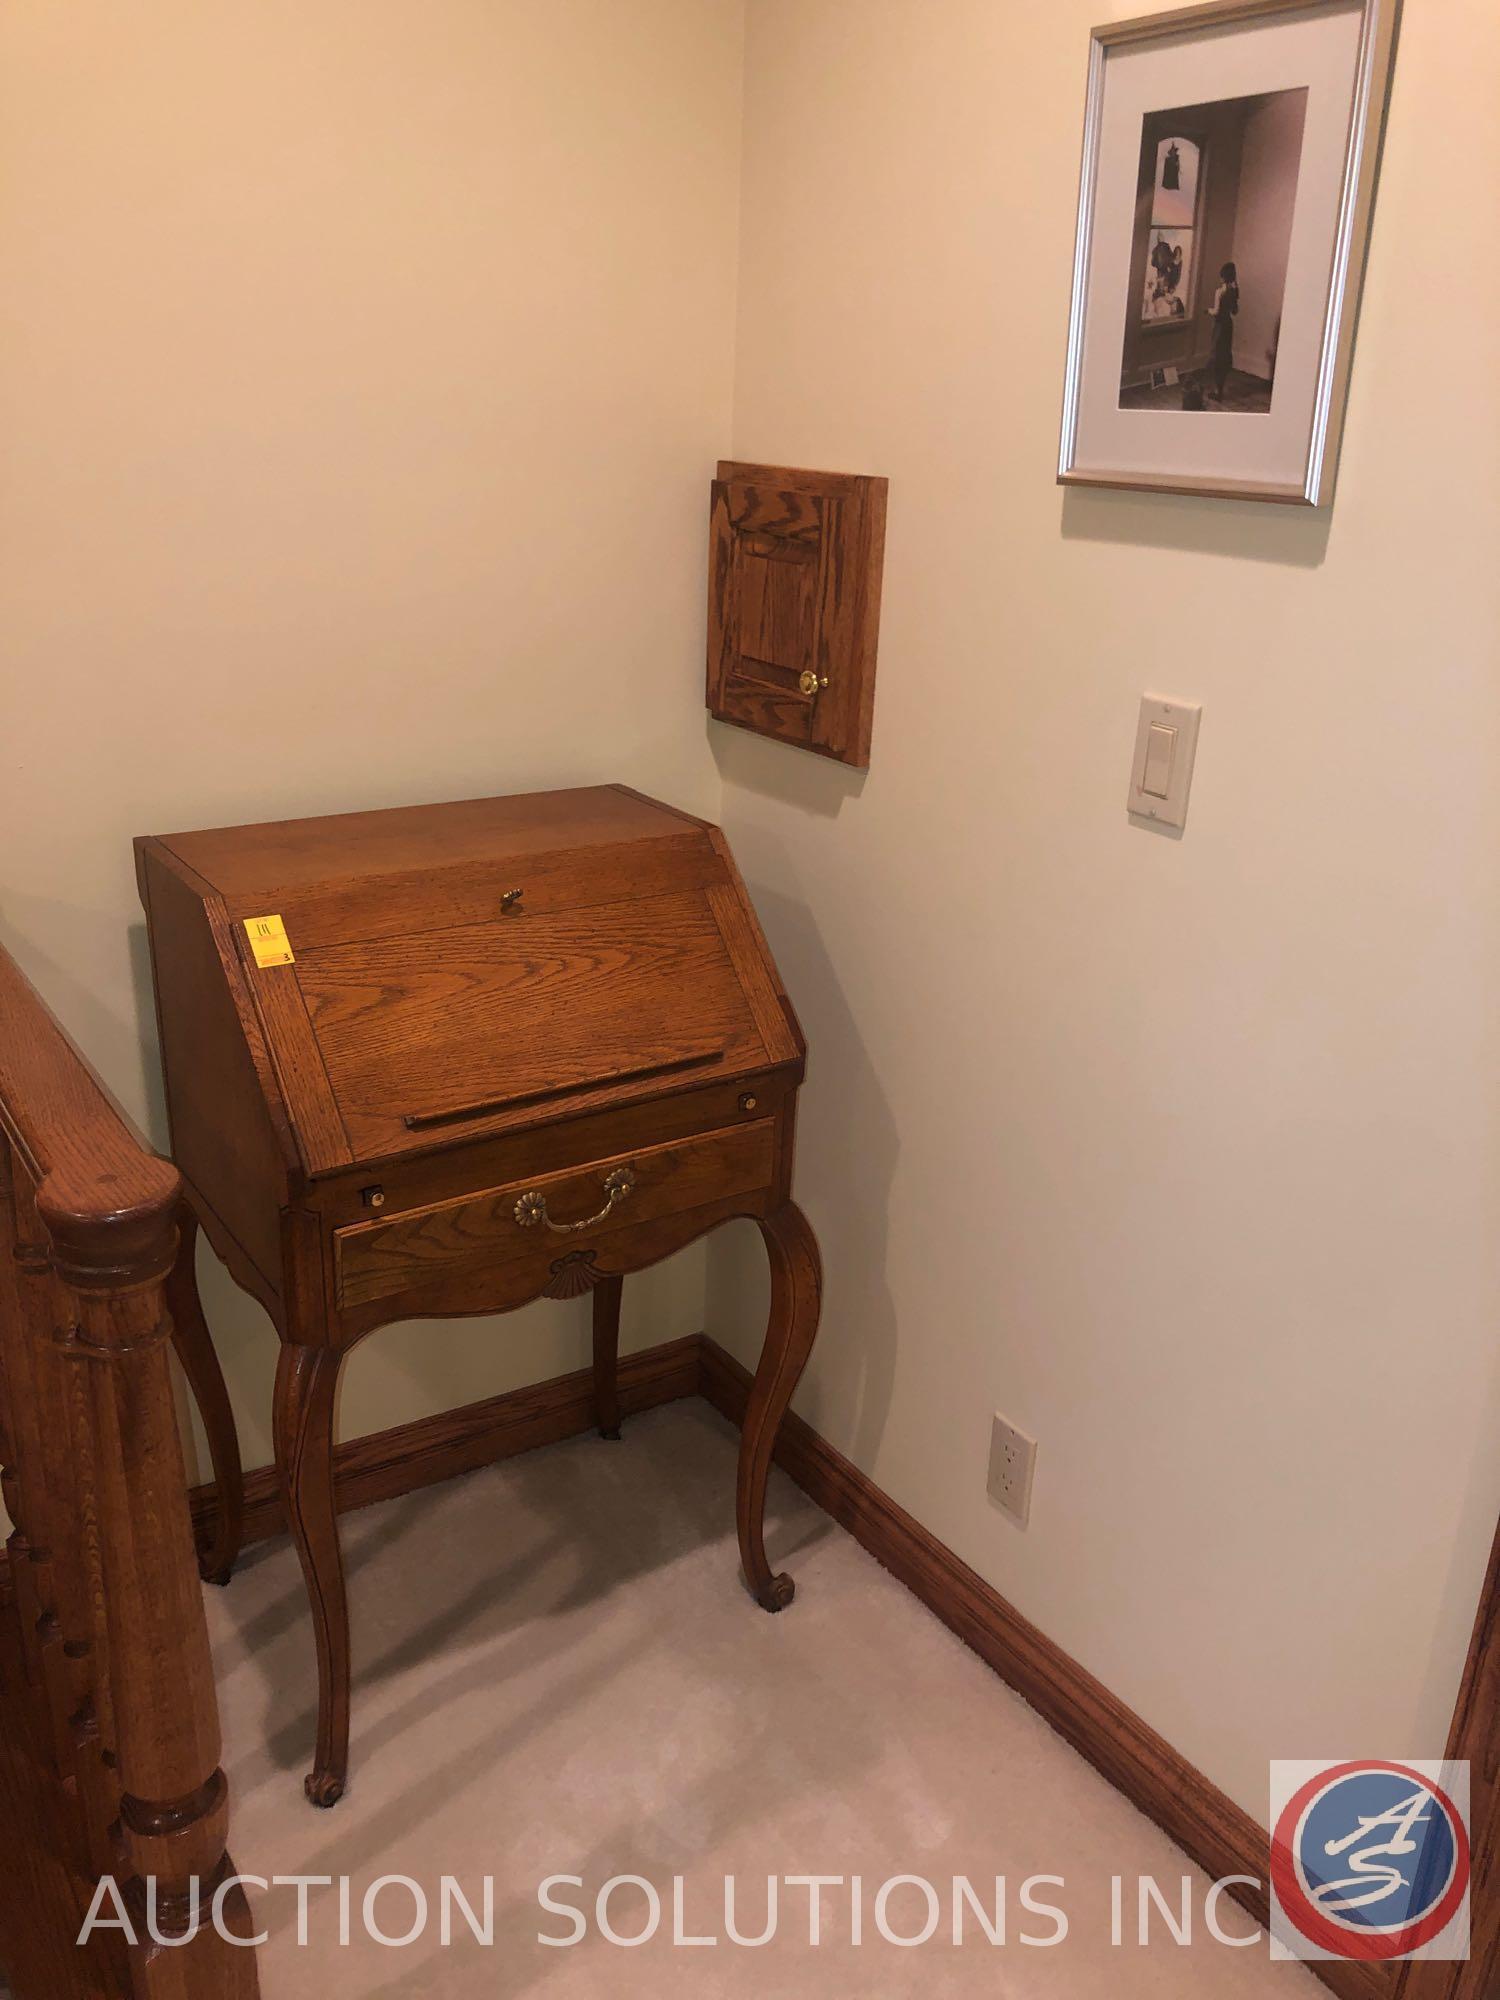 Vintage Baker Furniture Hide-A-Desk Measuring 23" X 16" X 37 1/2", Framed Wizard Of Oz Print Signed